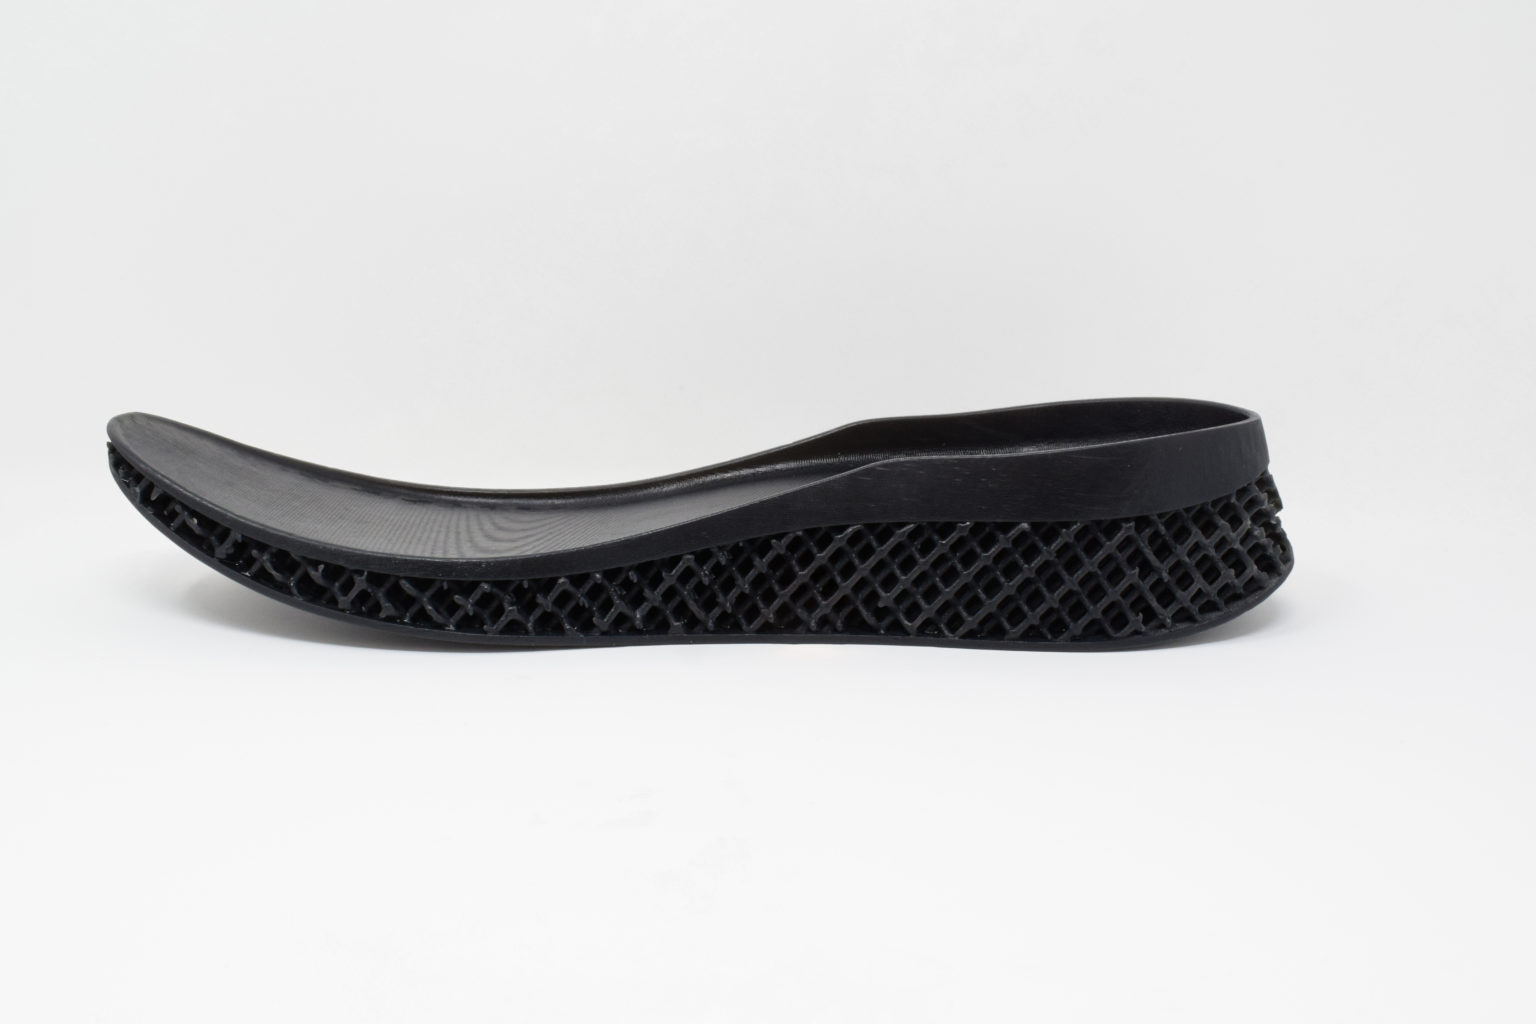  Adaptive3D のエラストマー ETR90 を材料として作成された靴の、黒いミッドソール